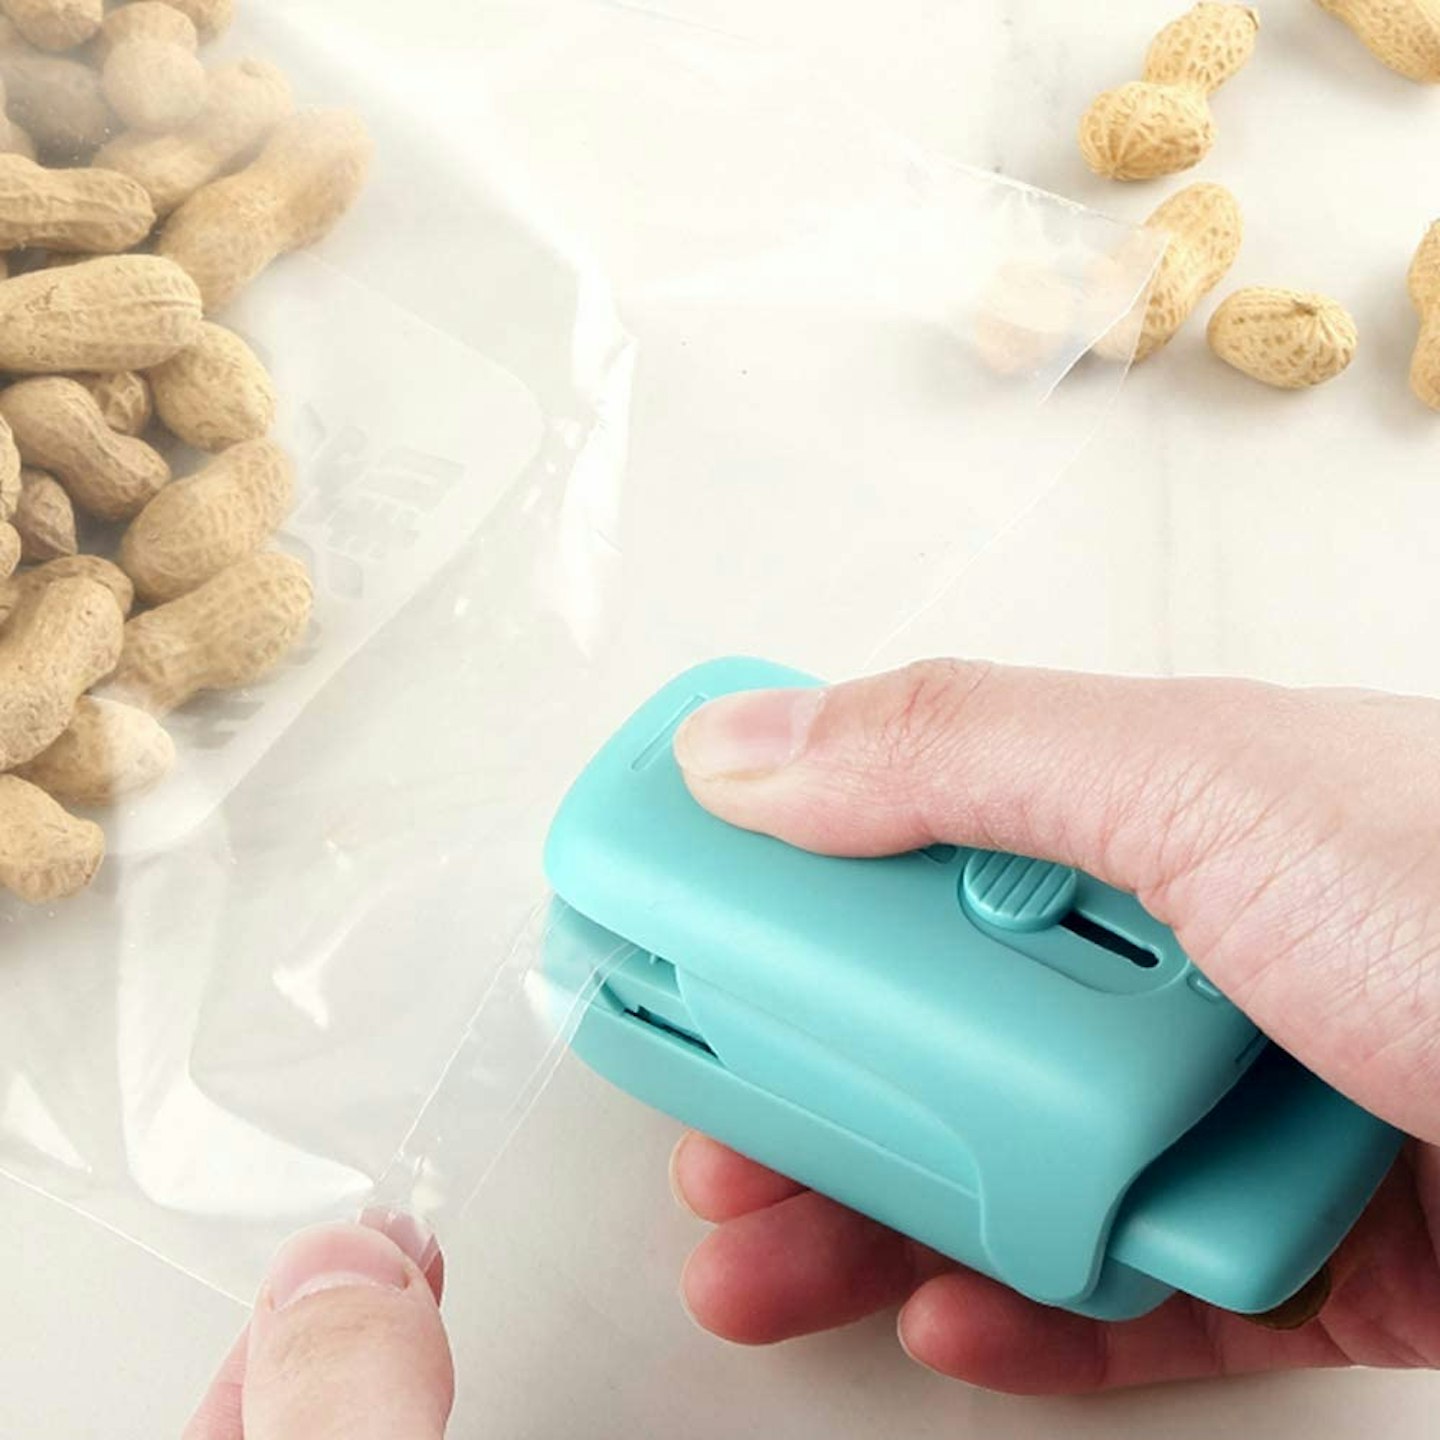 Best kitchen gadgets on Amazon